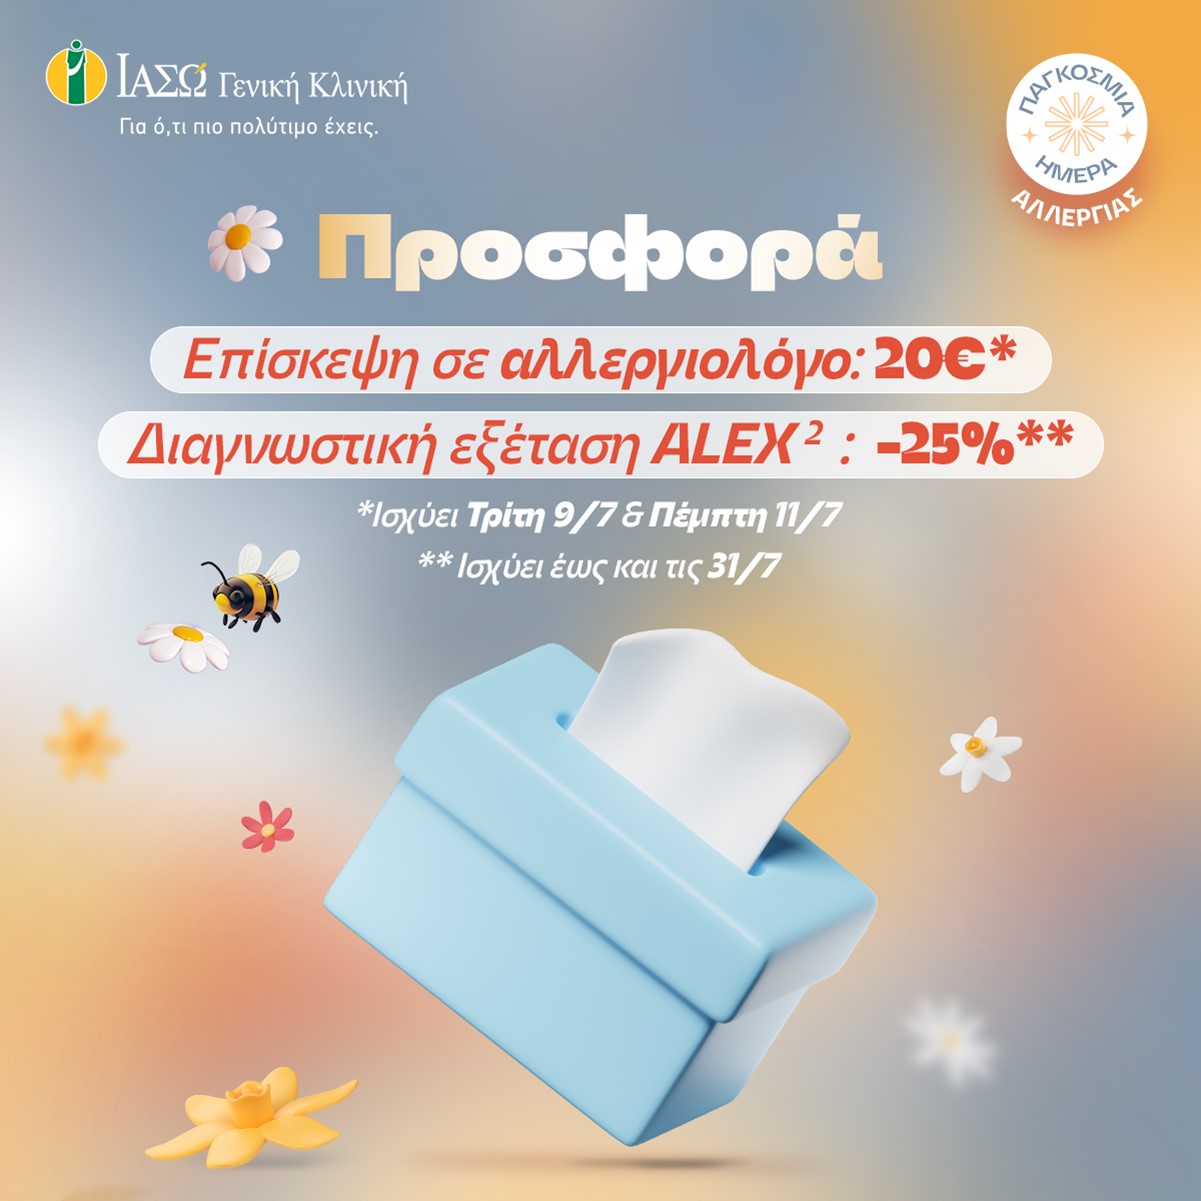 ΙΑΣΩ Γενική Κλινική: Προνομιακή τιμή 20€ για επίσκεψη σε Αλλεργιολόγο & 25% έκπτωση στη διαγνωστική εξέταση ALEX2 με αφορμή την Παγκόσμια Ημέρα Αλλεργίας